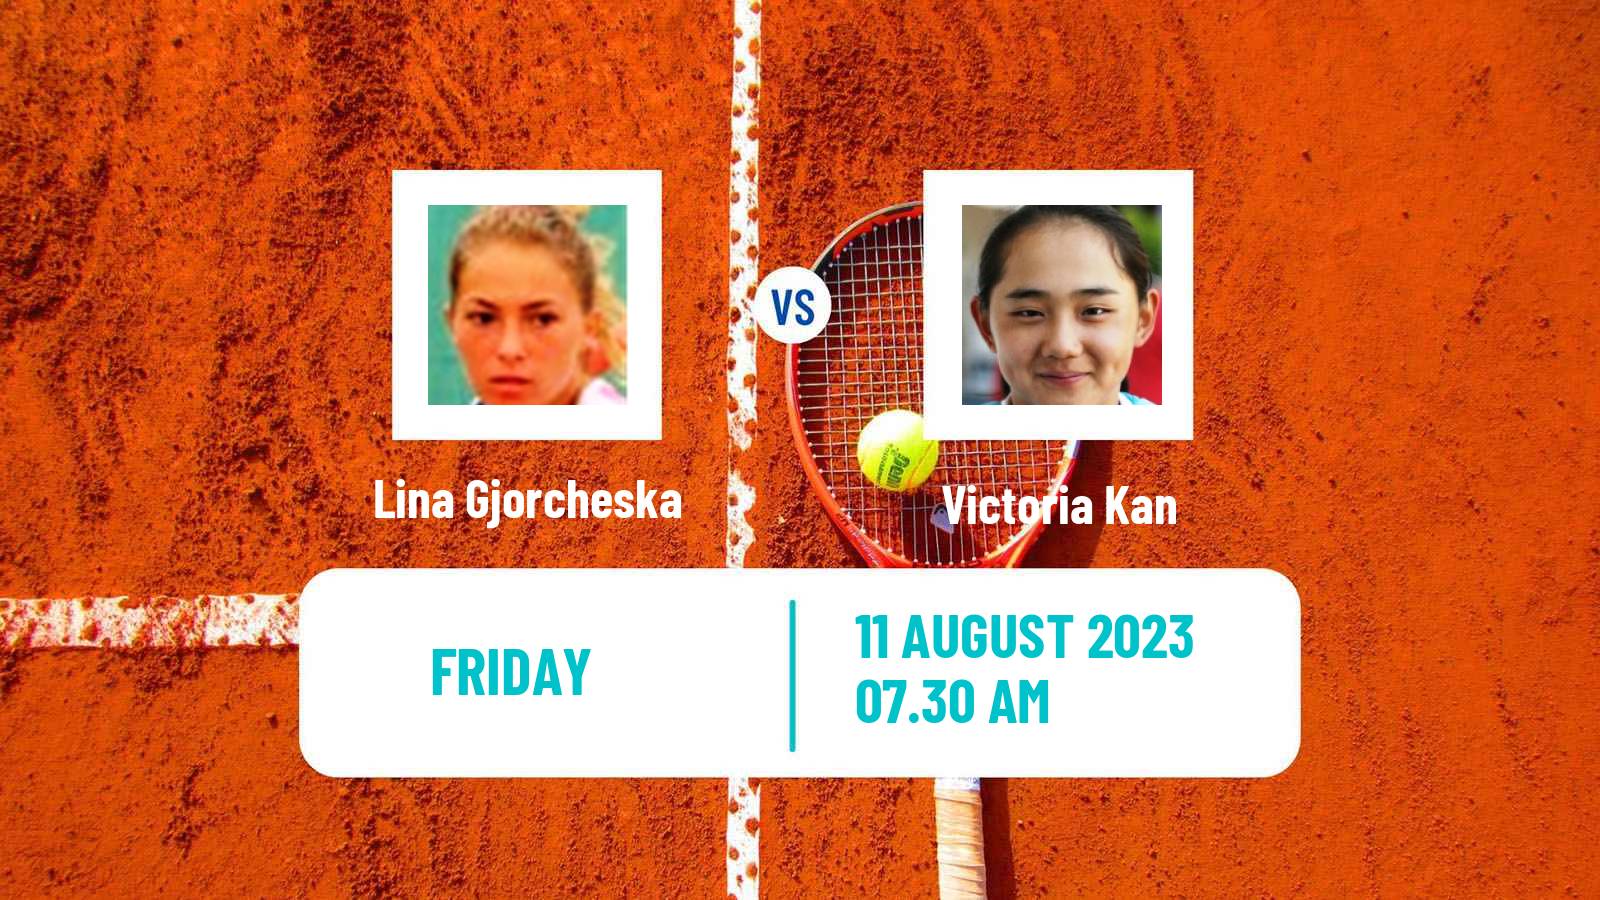 Tennis ITF W25 Osijek 2 Women Lina Gjorcheska - Victoria Kan